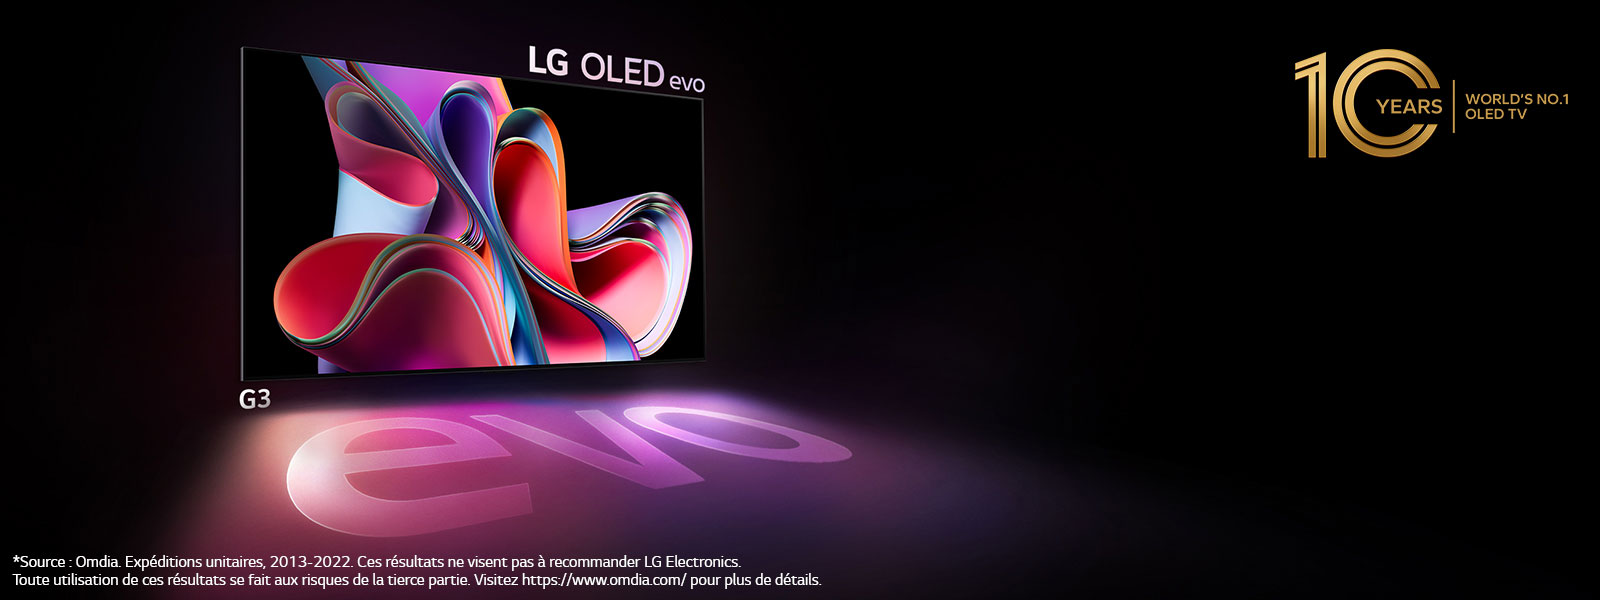 LG OLED G3 TVが暗い空間で輝いています。右上では、ロゴがOLEDの10周年を思い出します。